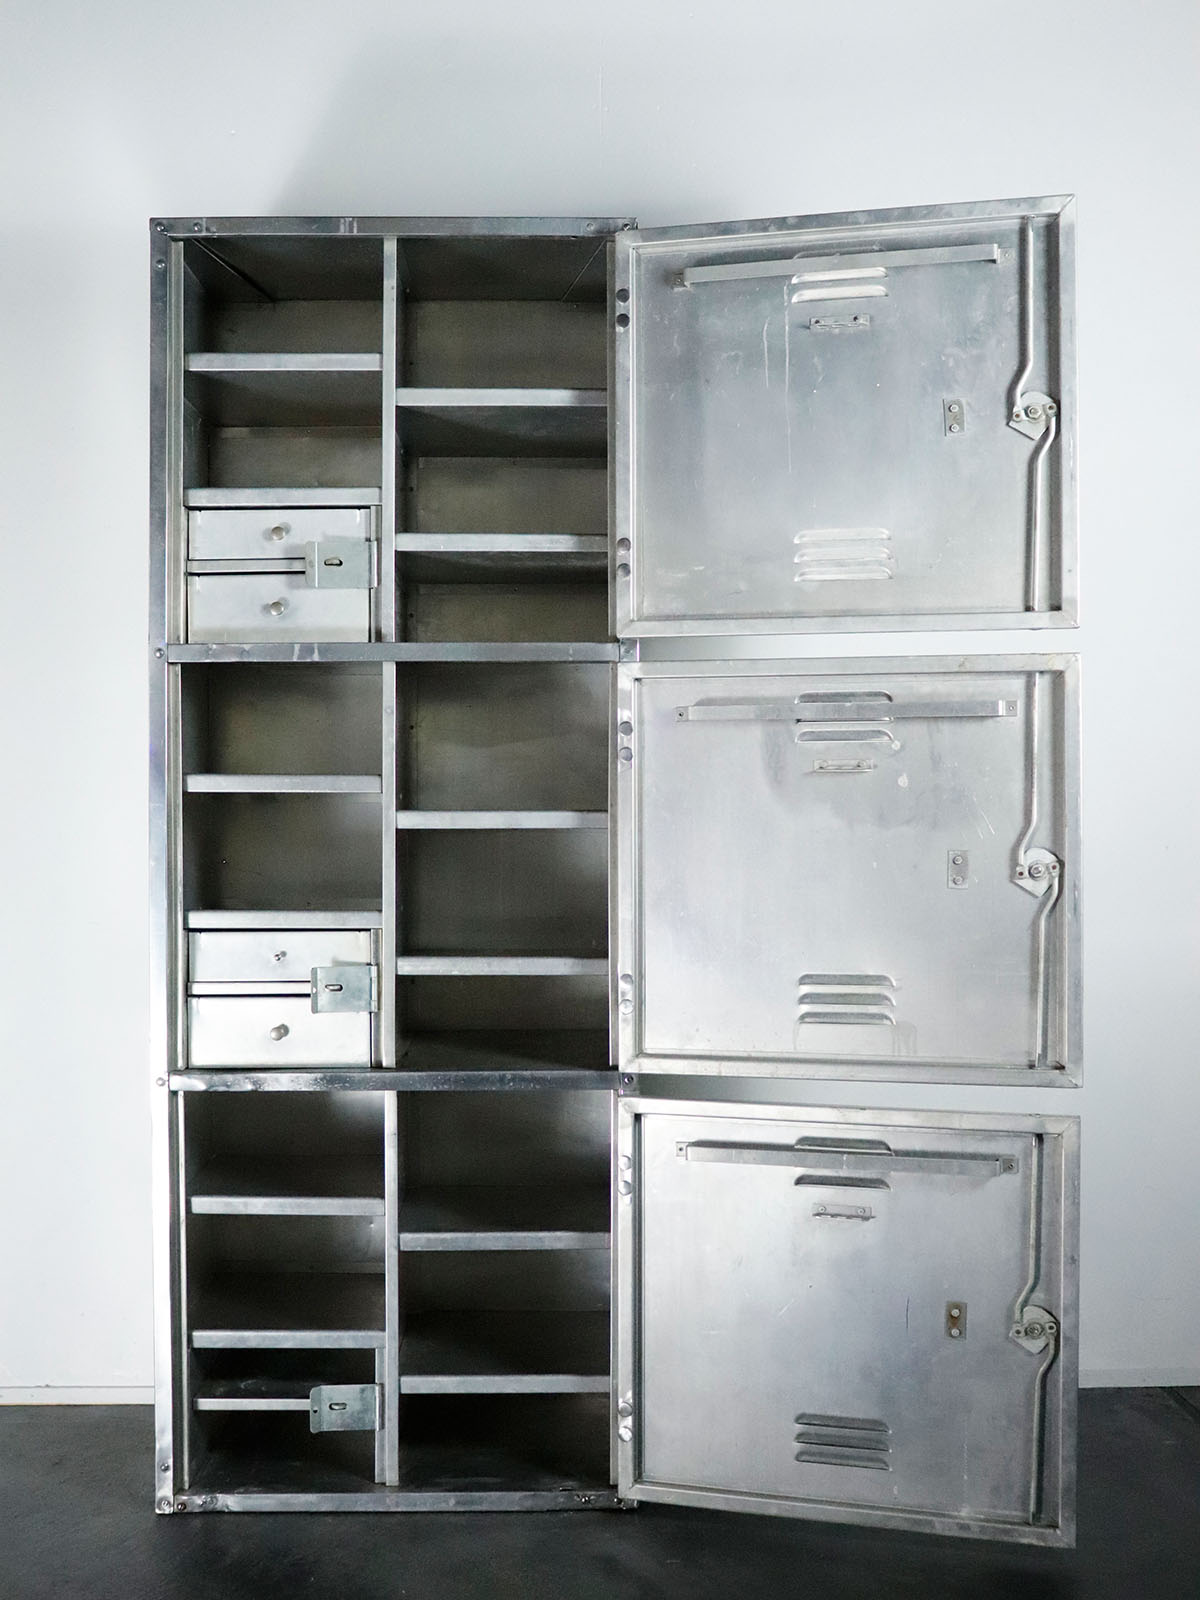 WWⅡ, USA,vintage,locker,USNAVY,aluminum